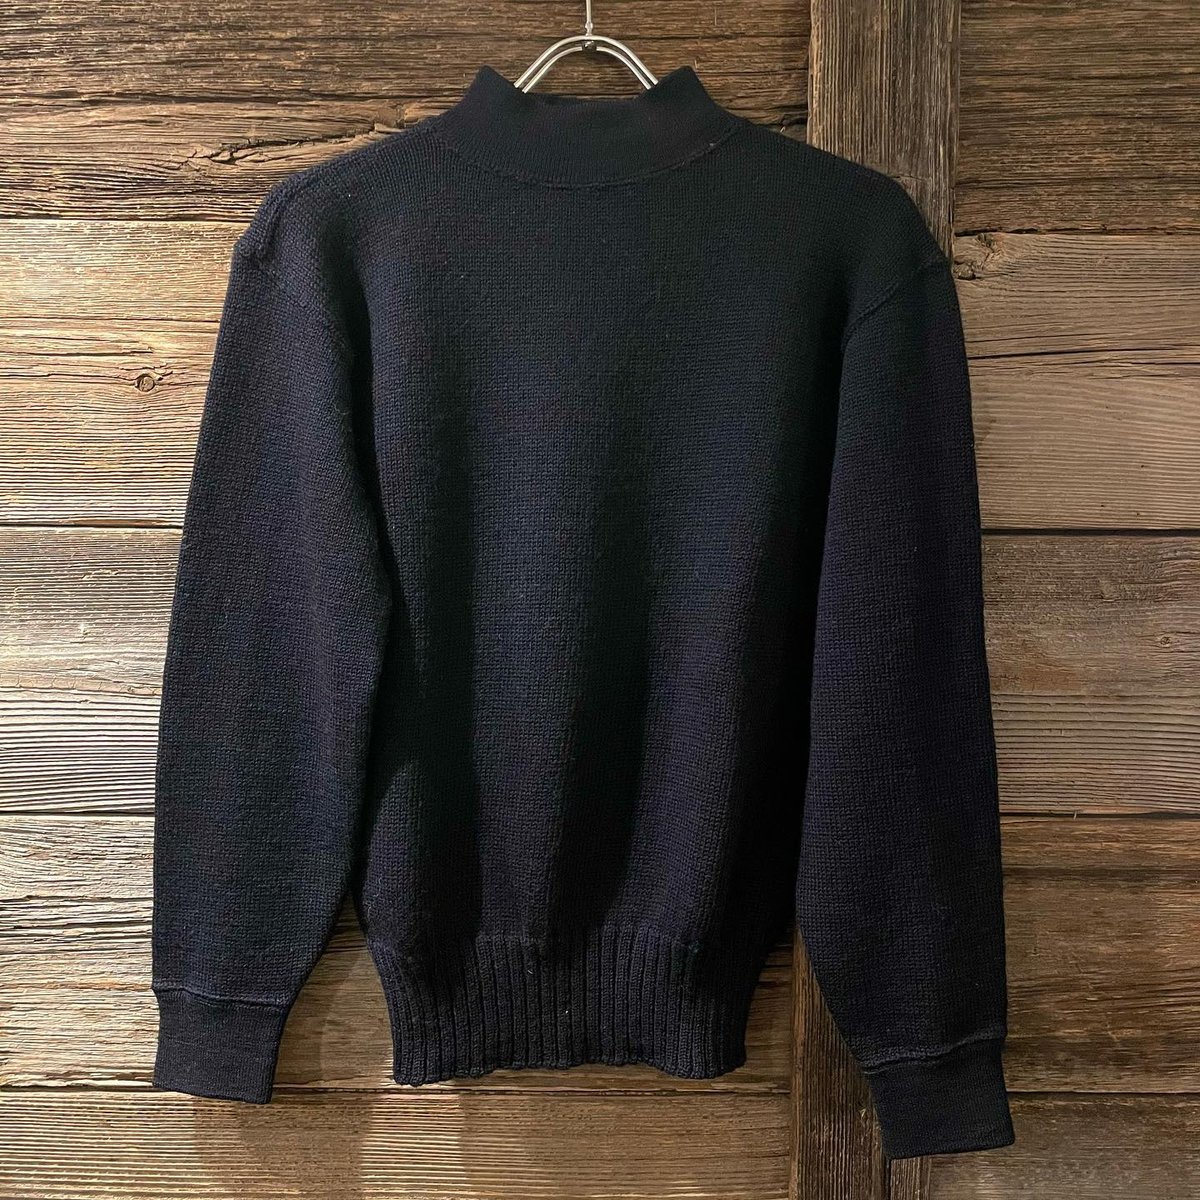 US NAVY GOB SWEATER 1950s ゴブセーター 濃紺 モックネックセーター 